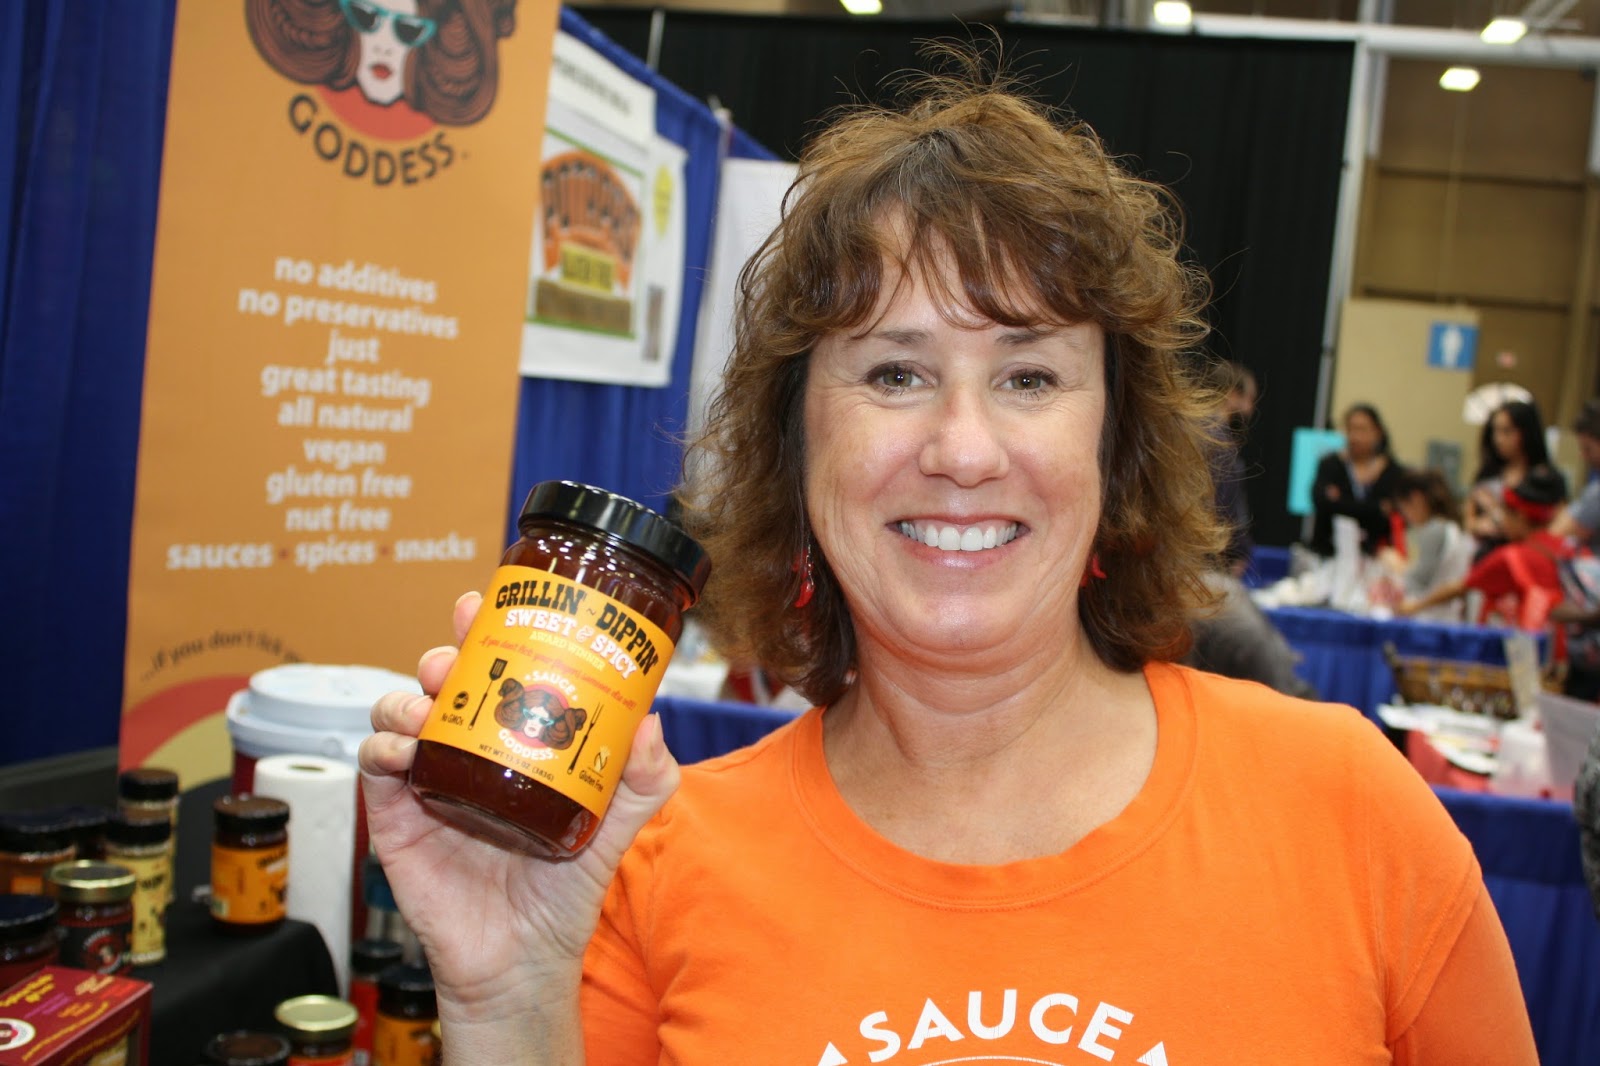 Jennifer, the Sauce Goddess, holding a jar of her bbq sauce